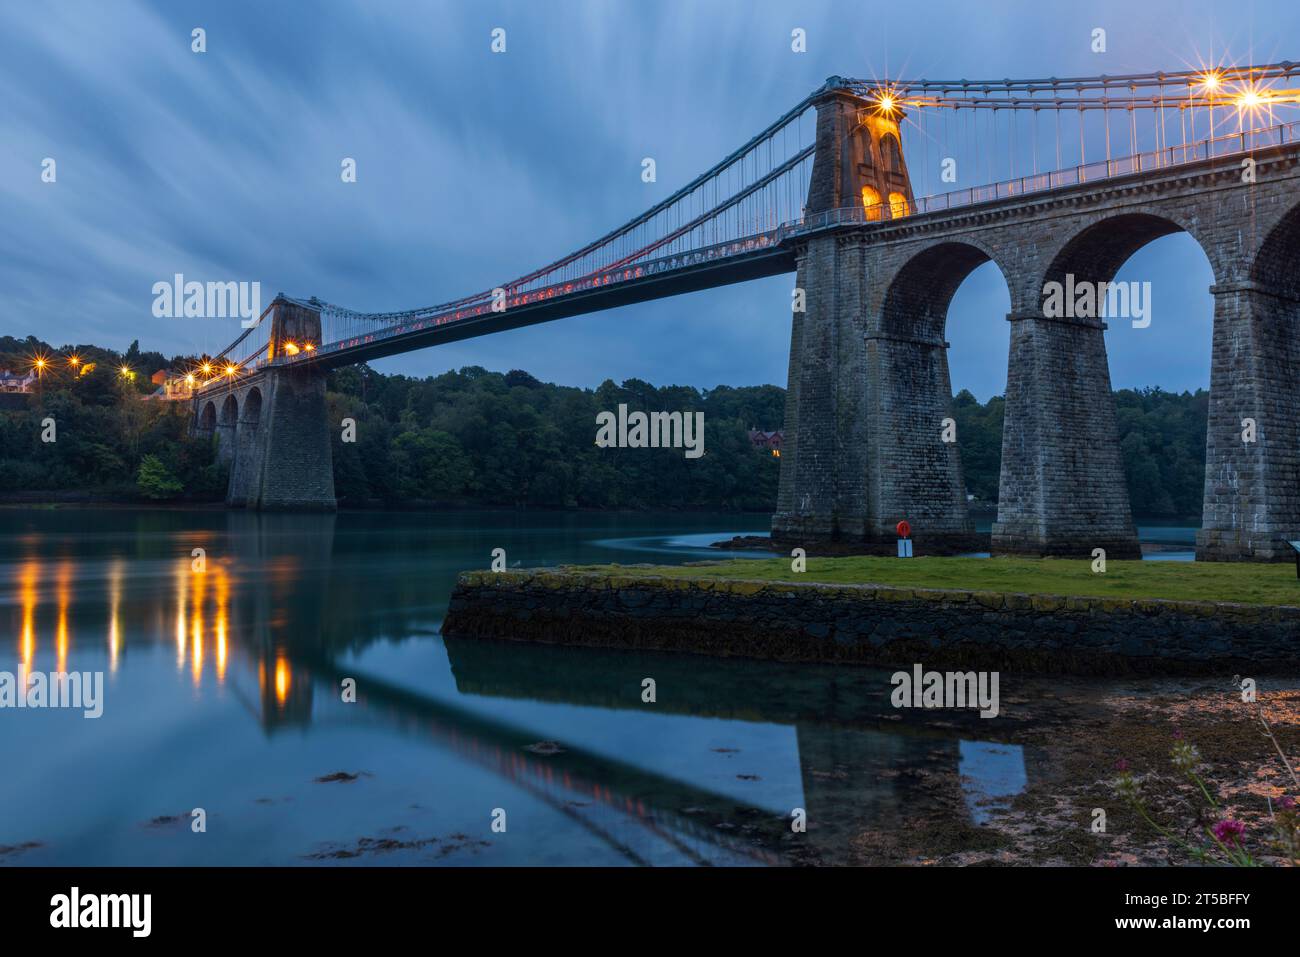 L'emblématique Menai Bridge, un pont suspendu conçu par Thomas Telford et construit au 19e siècle. Le pont enjambe le détroit de Menai, reliant m Banque D'Images